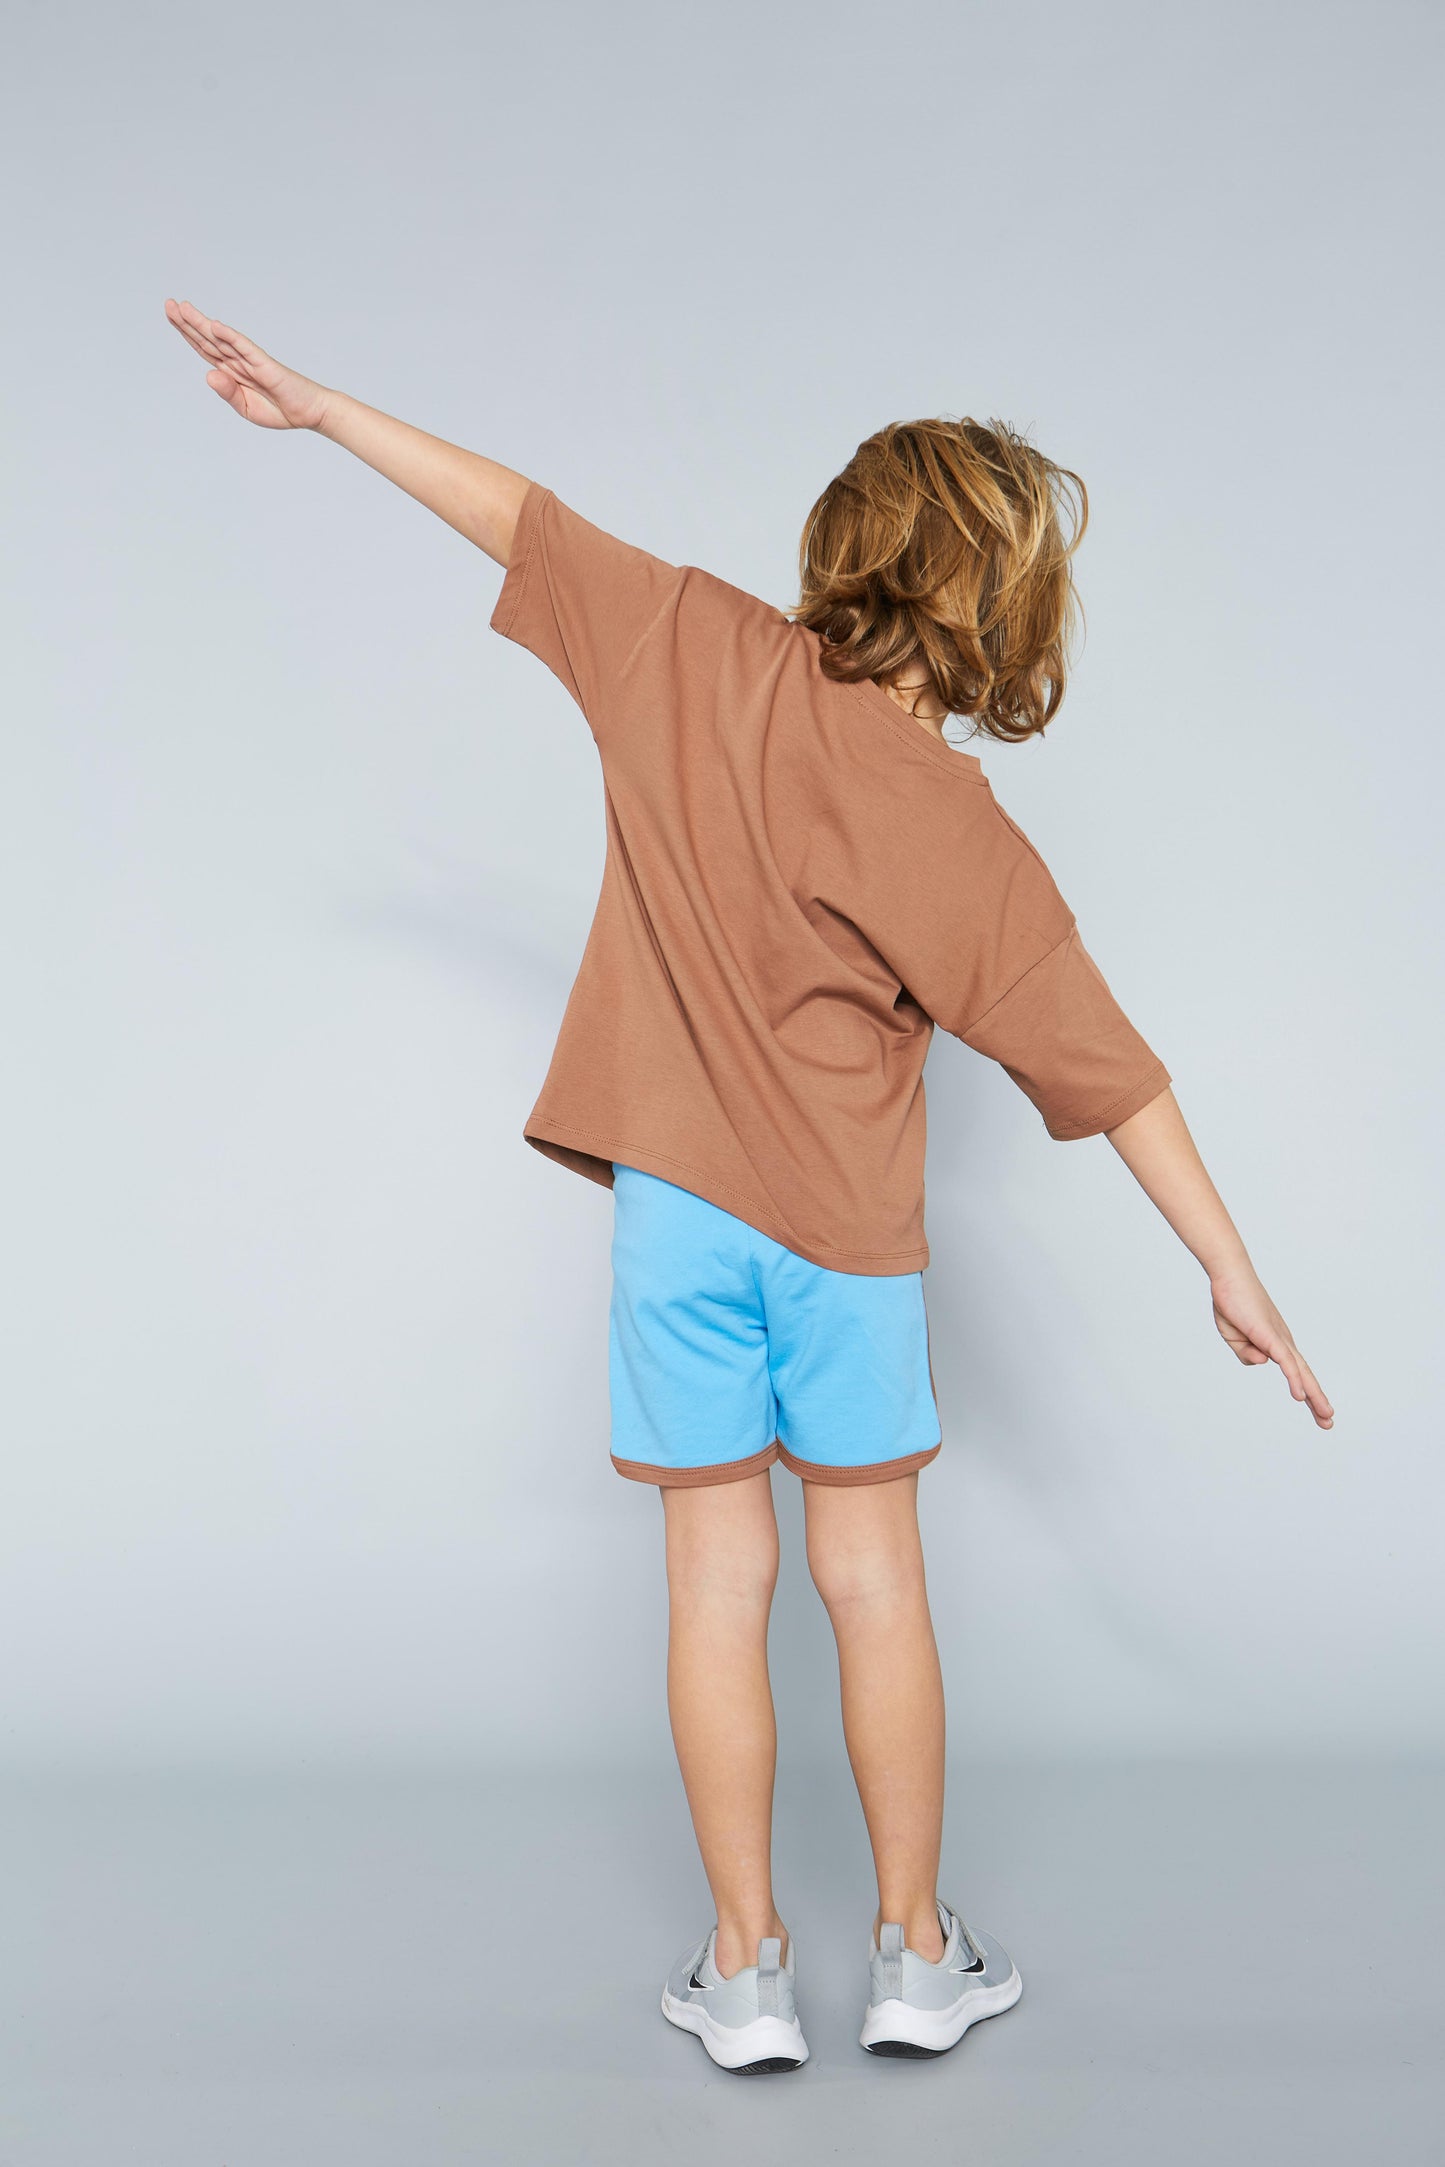 Çocuk Uniseks %100 Pamuk Baskılı Tişört-Şort Takım